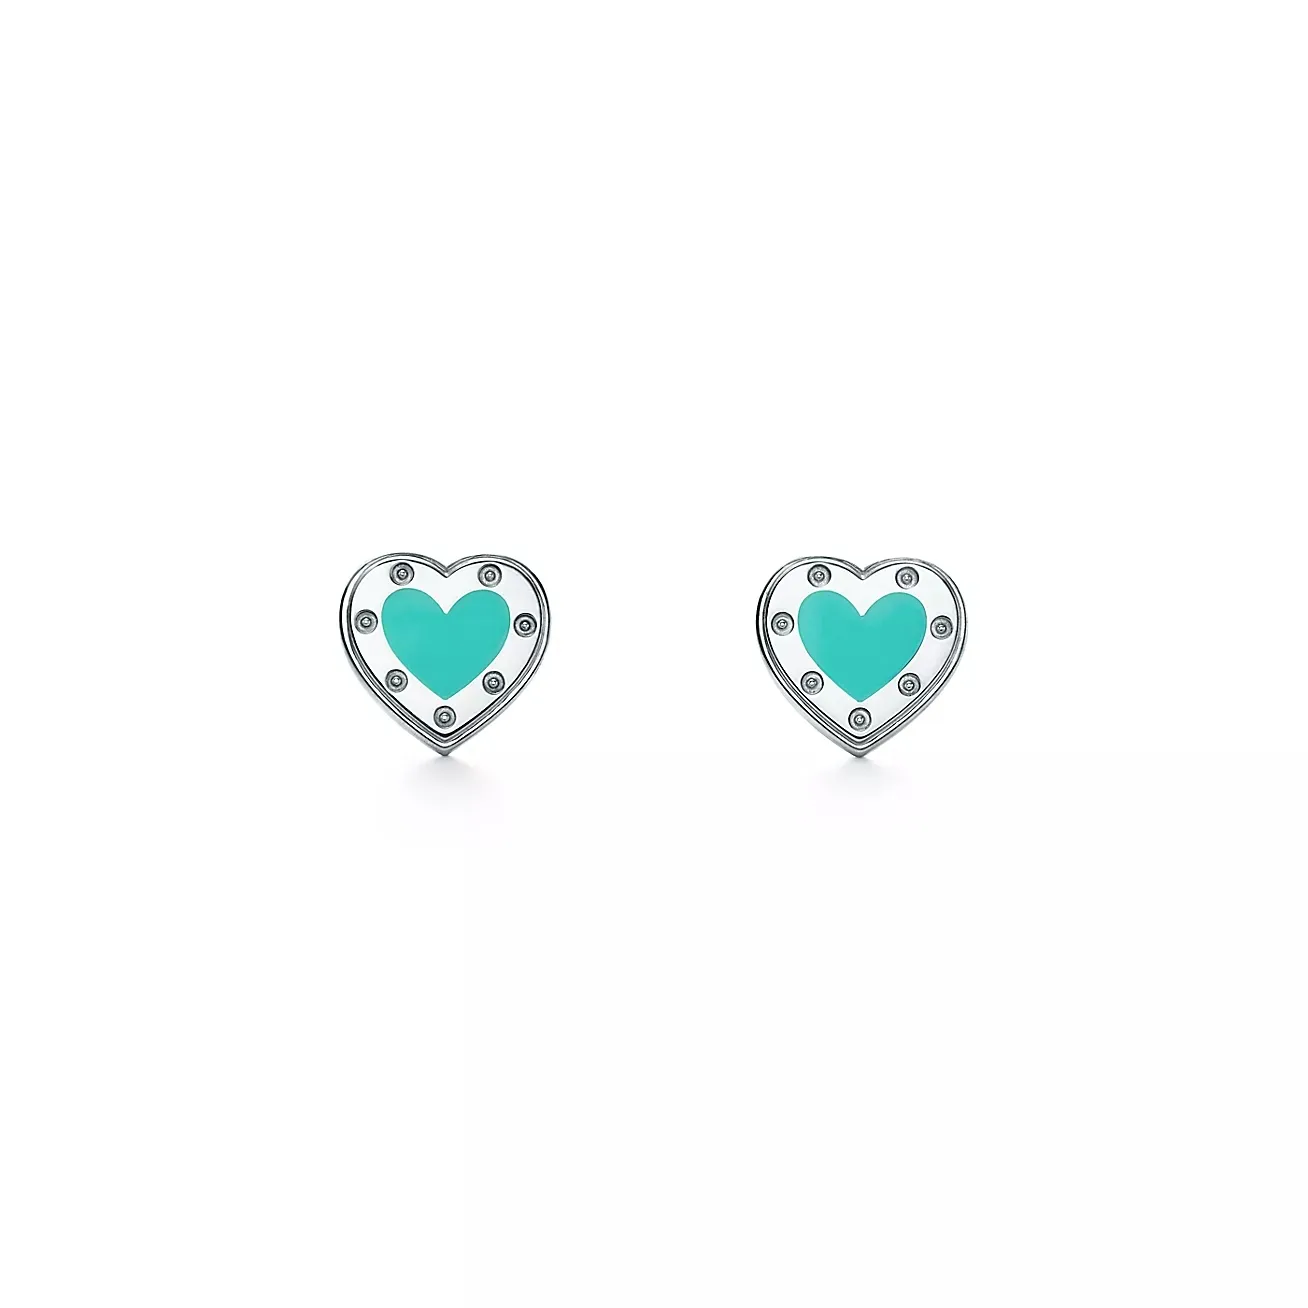 Wholesale Tiffi any earrings S925 sterling silver blue enamel heart-shaped Ear Studs